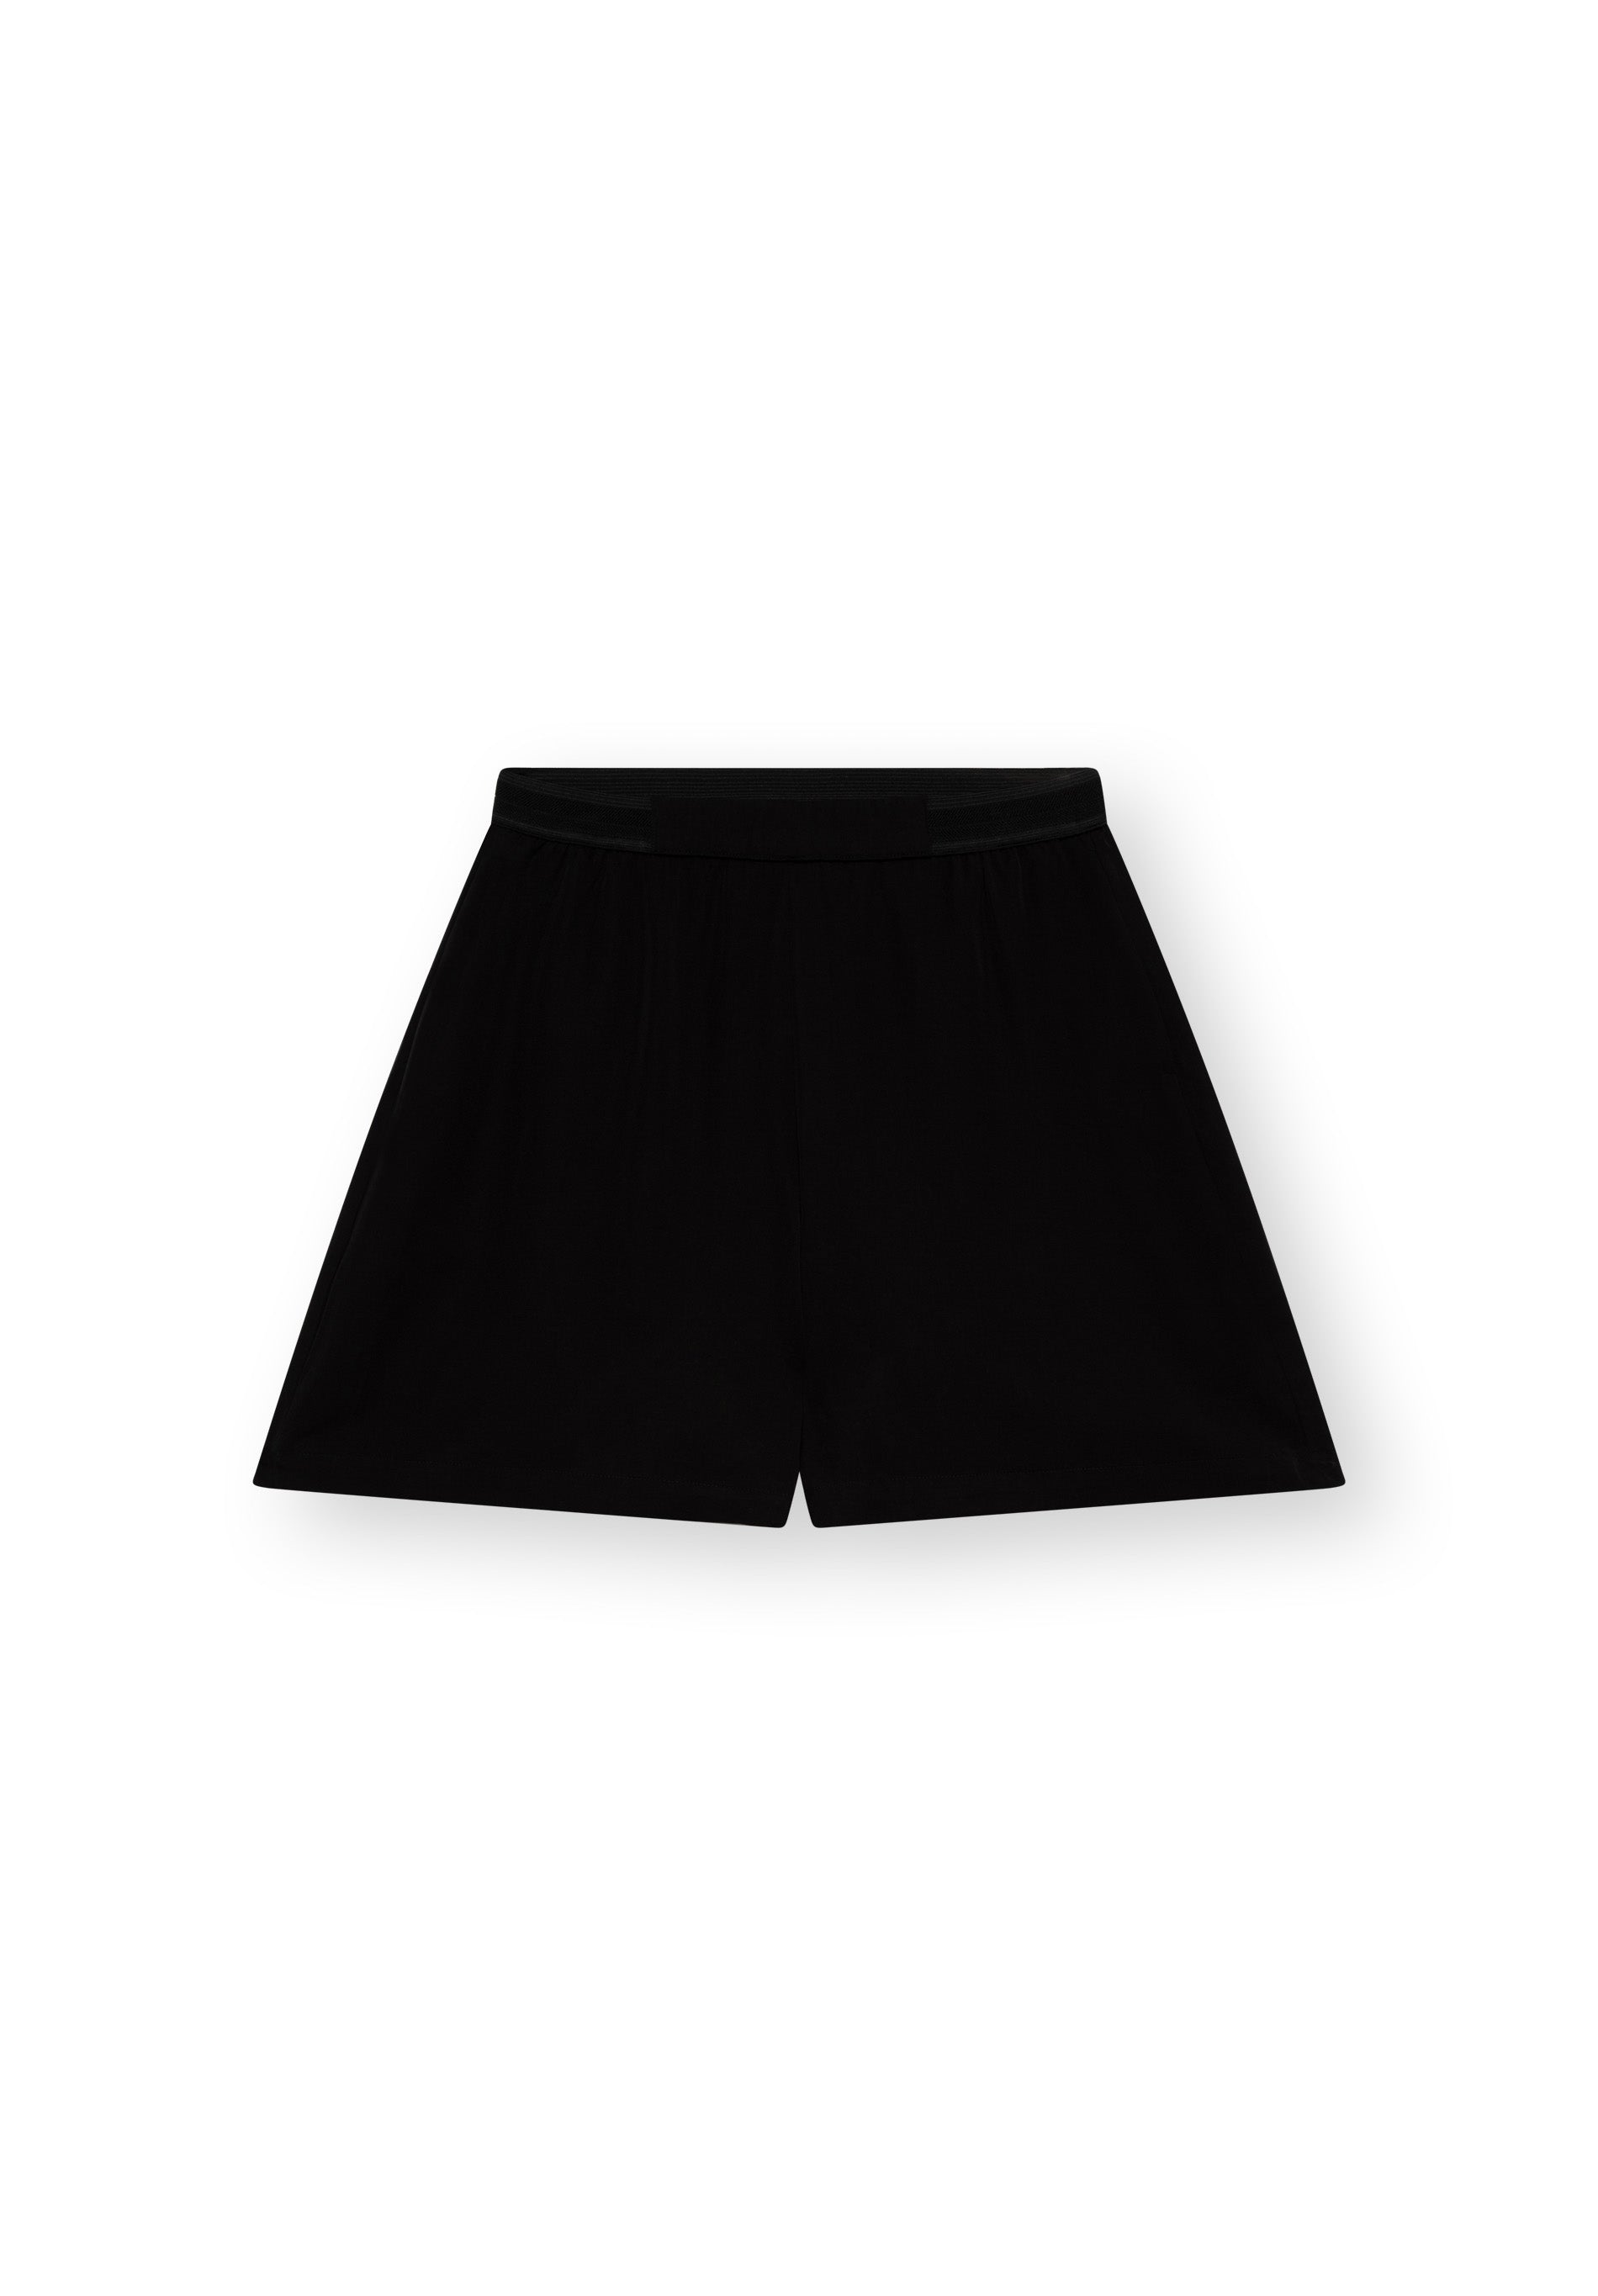 Shorts FELIPPA in black by LOVJOI made of TENCEL™ 